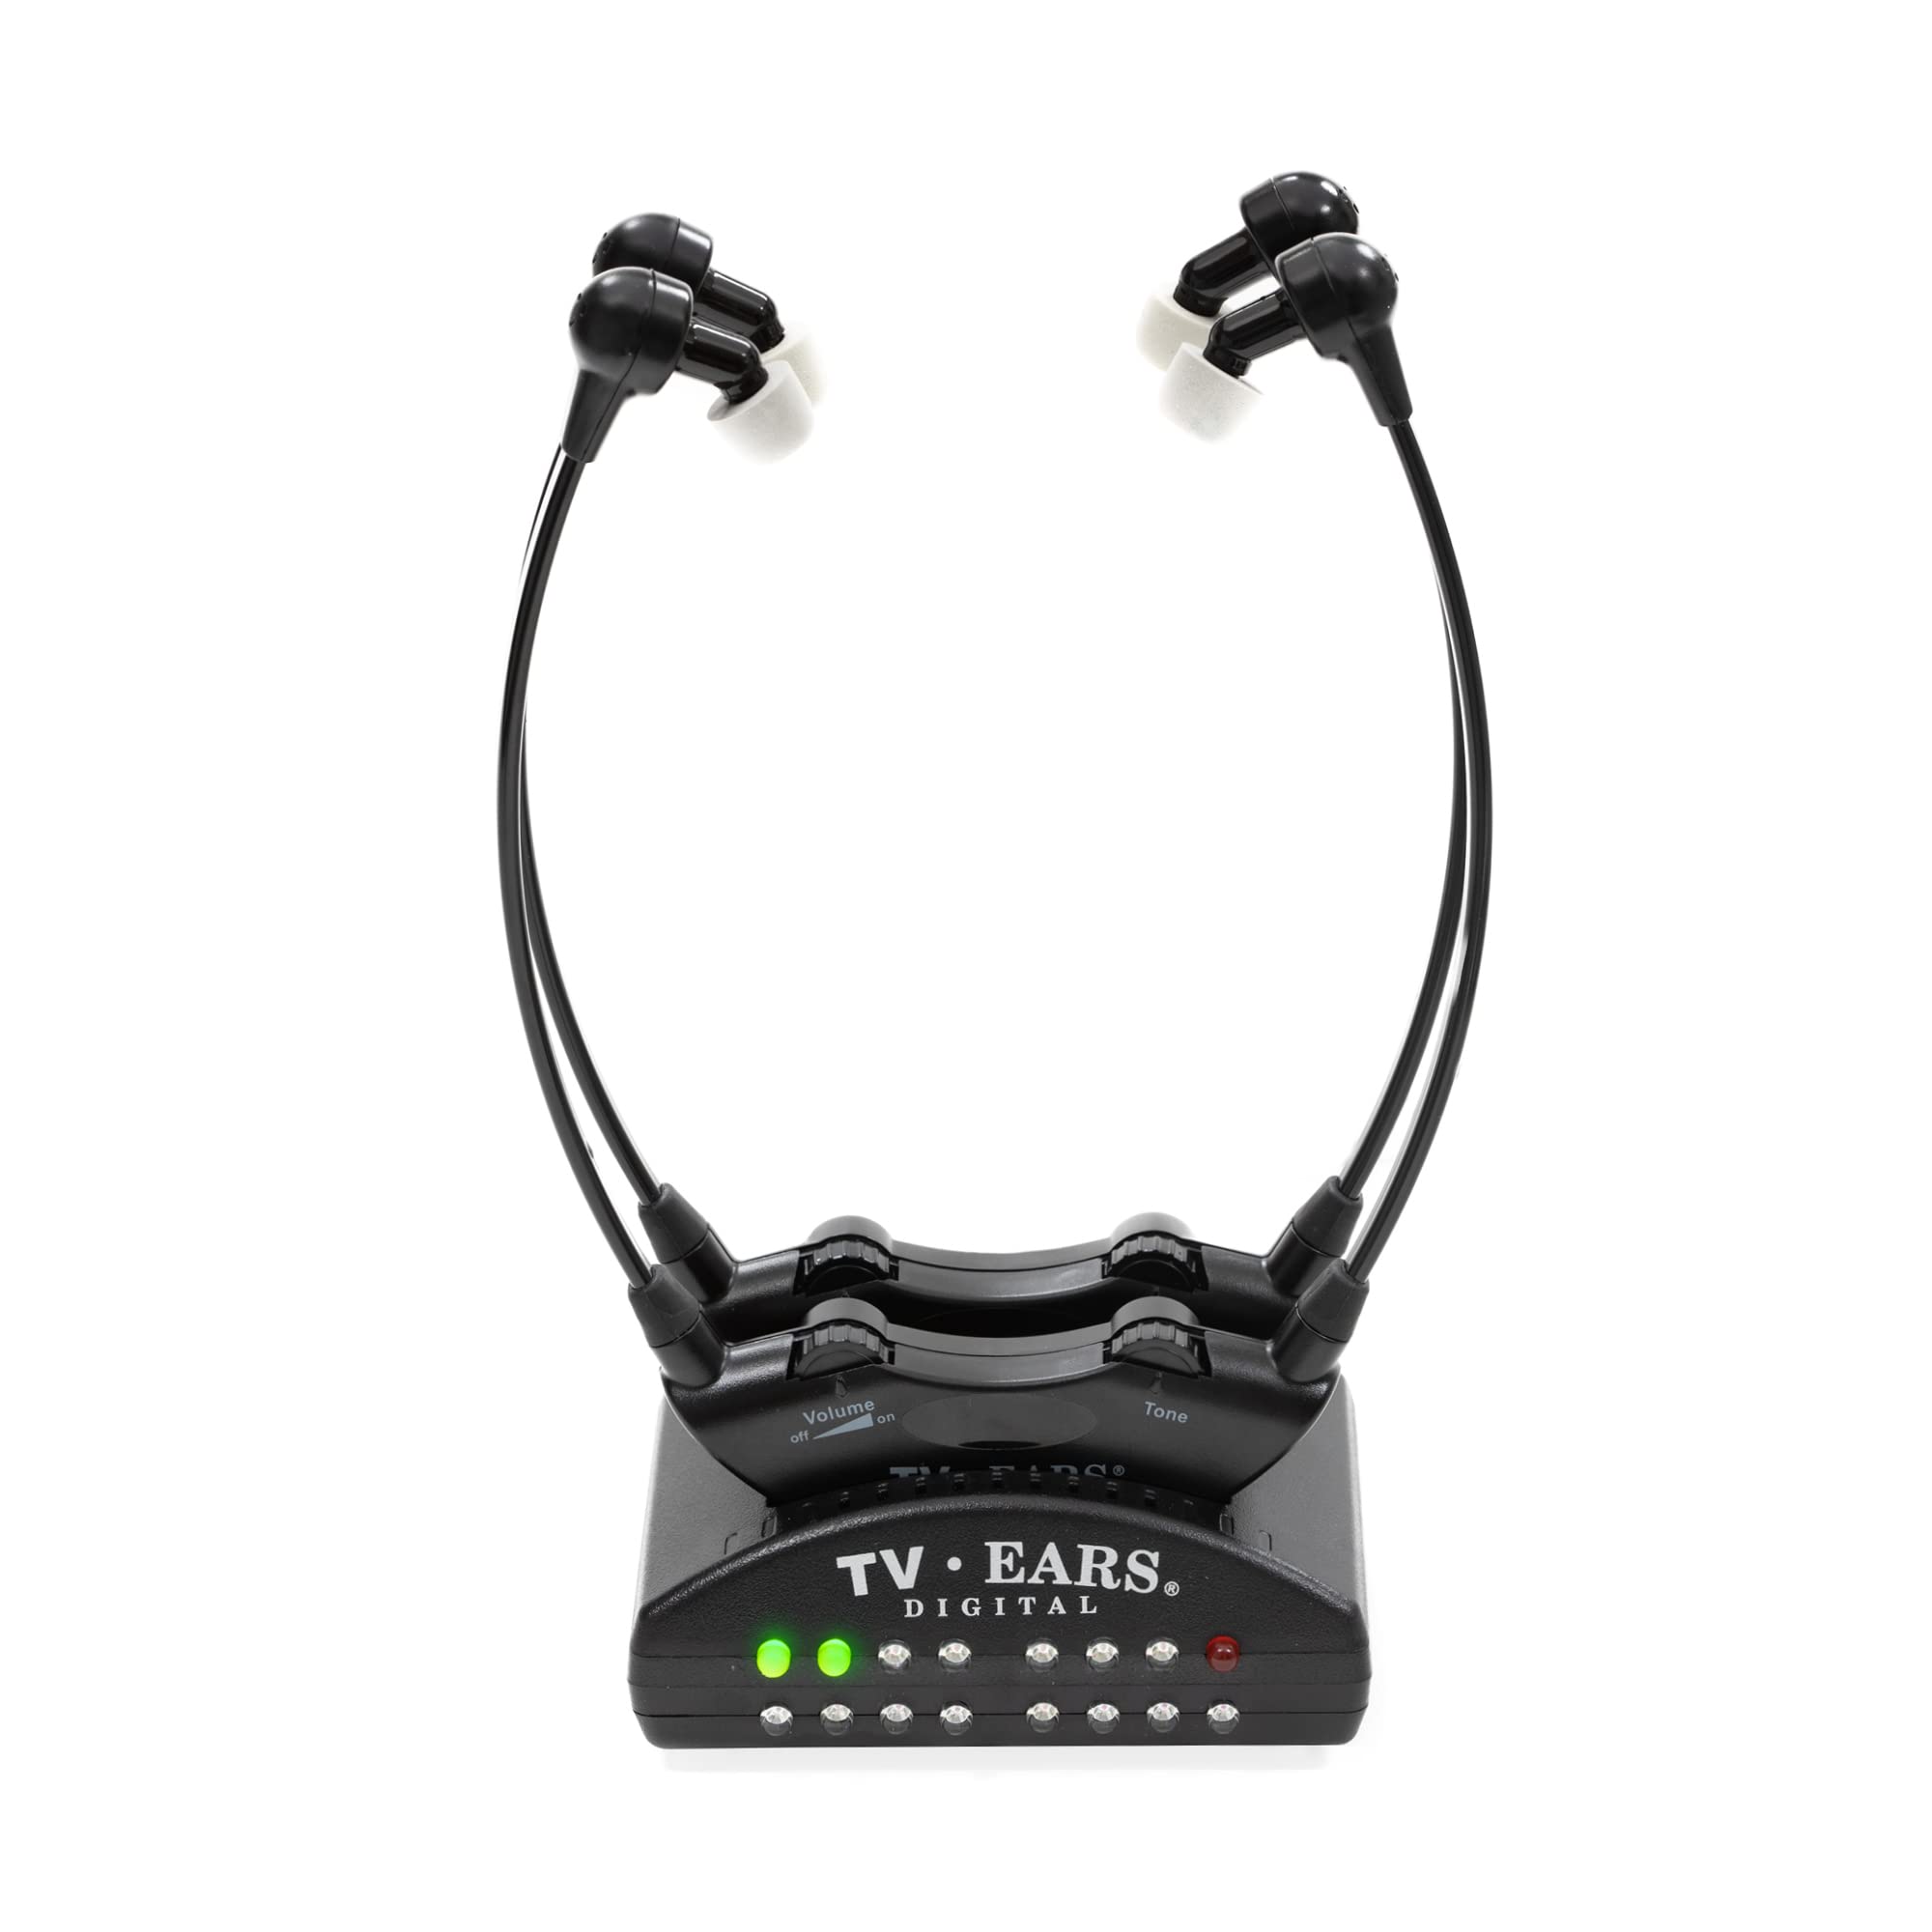  TV Ears Inc TV Ears デュアル デジタル ワイヤレス ヘッドセット システム - 異なる音量で 2 つのヘッドセットを同時に使用、すべてのテレビに対応、高...